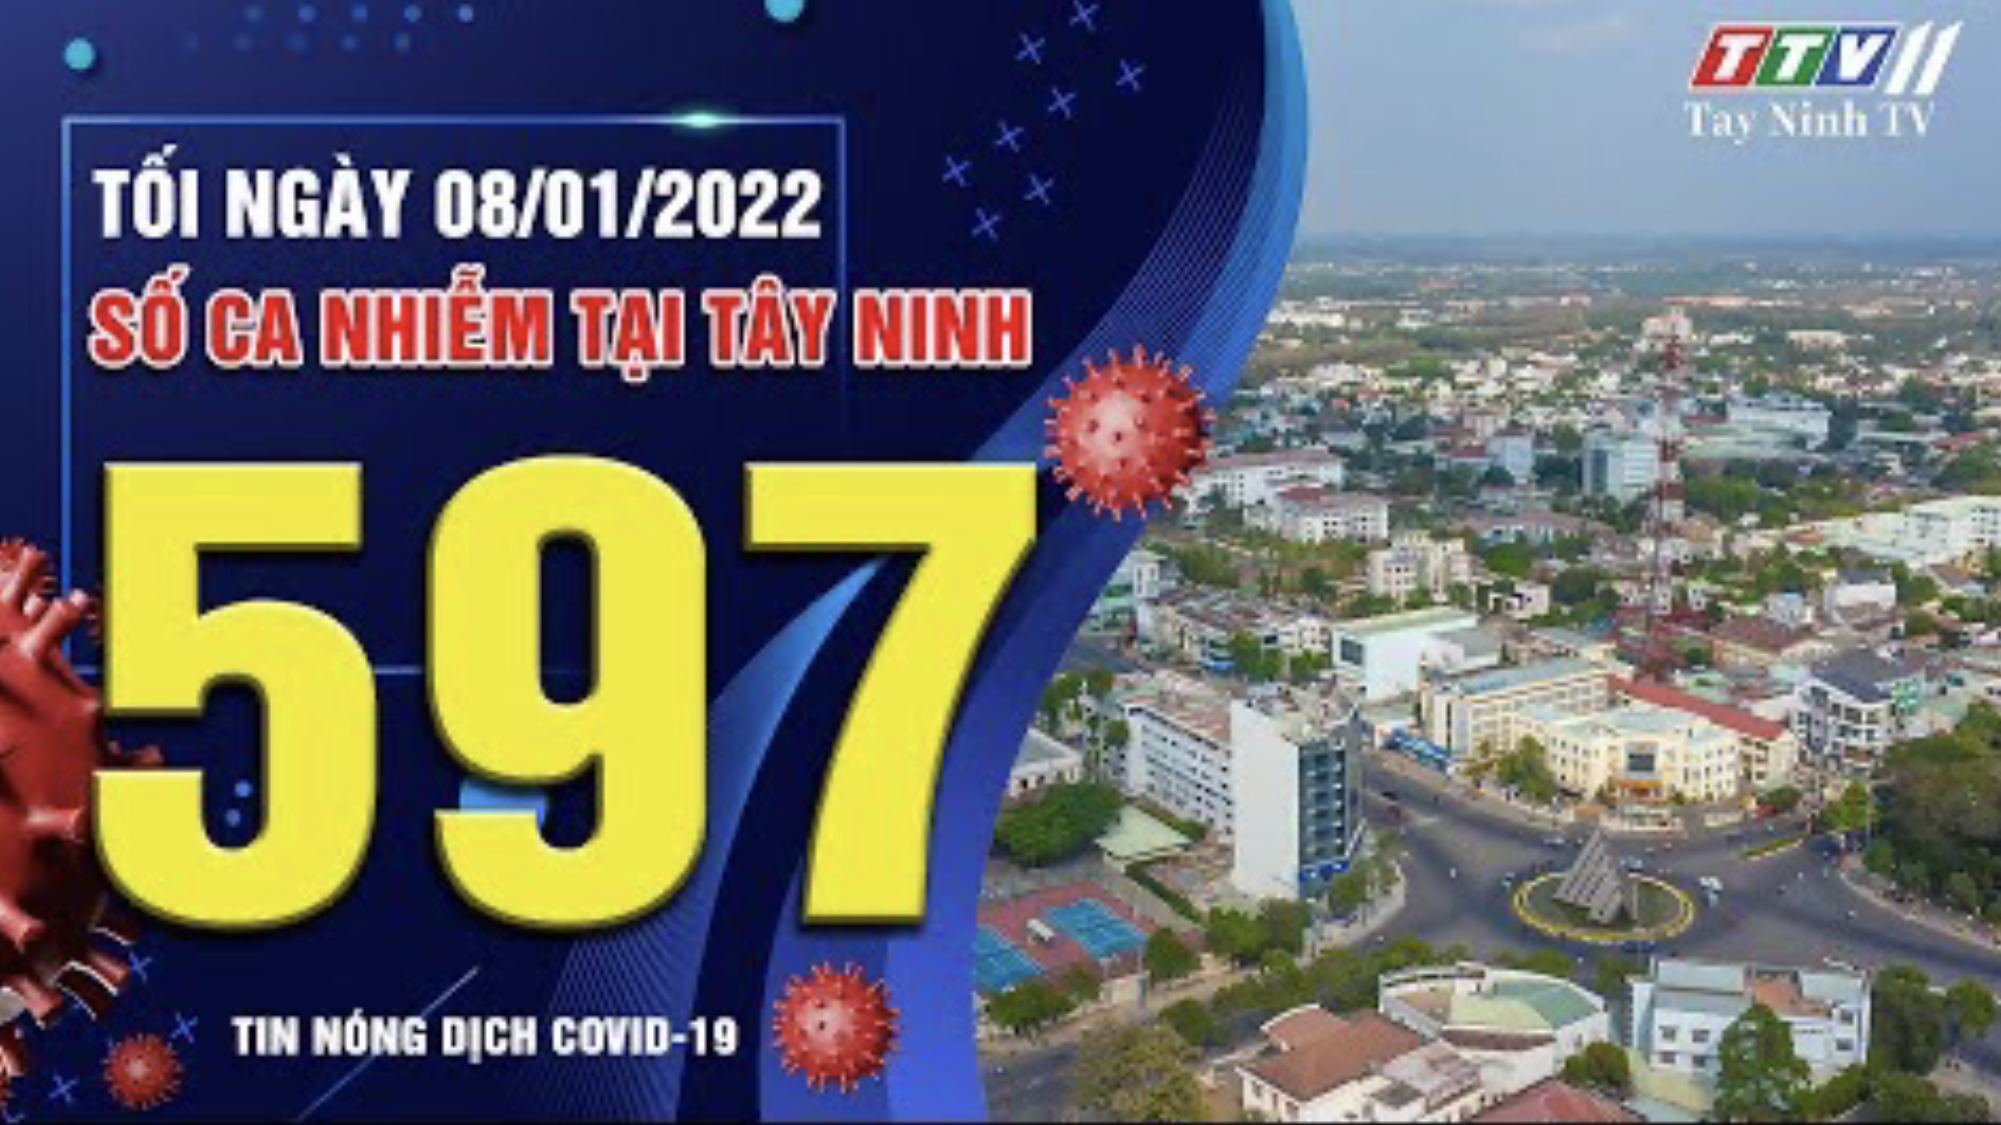 TIN TỨC COVID-19 TỐI 08/01/2022 | Tin tức hôm nay | TayNinhTV